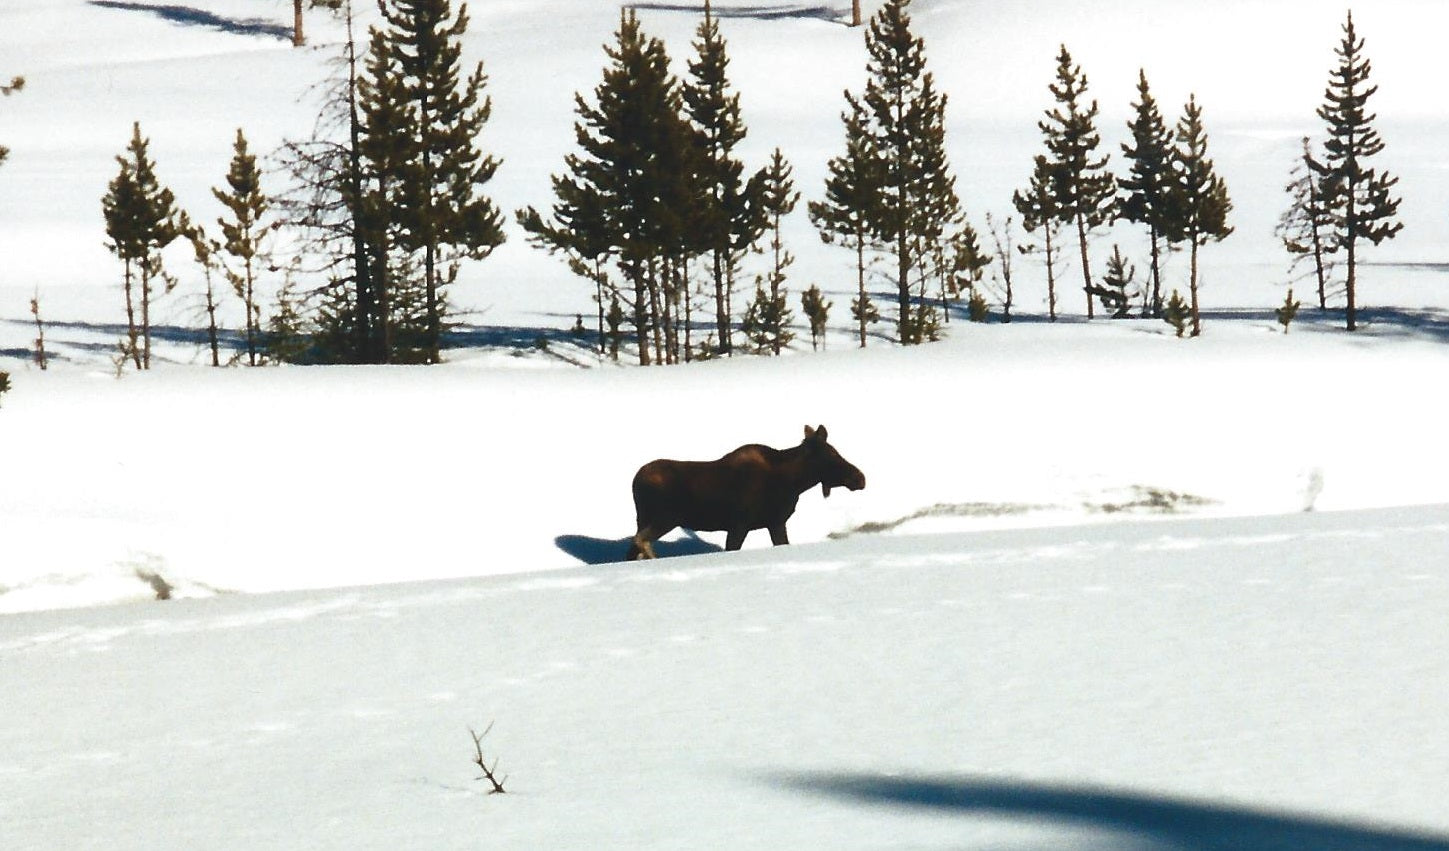 Moose in Yellowstone